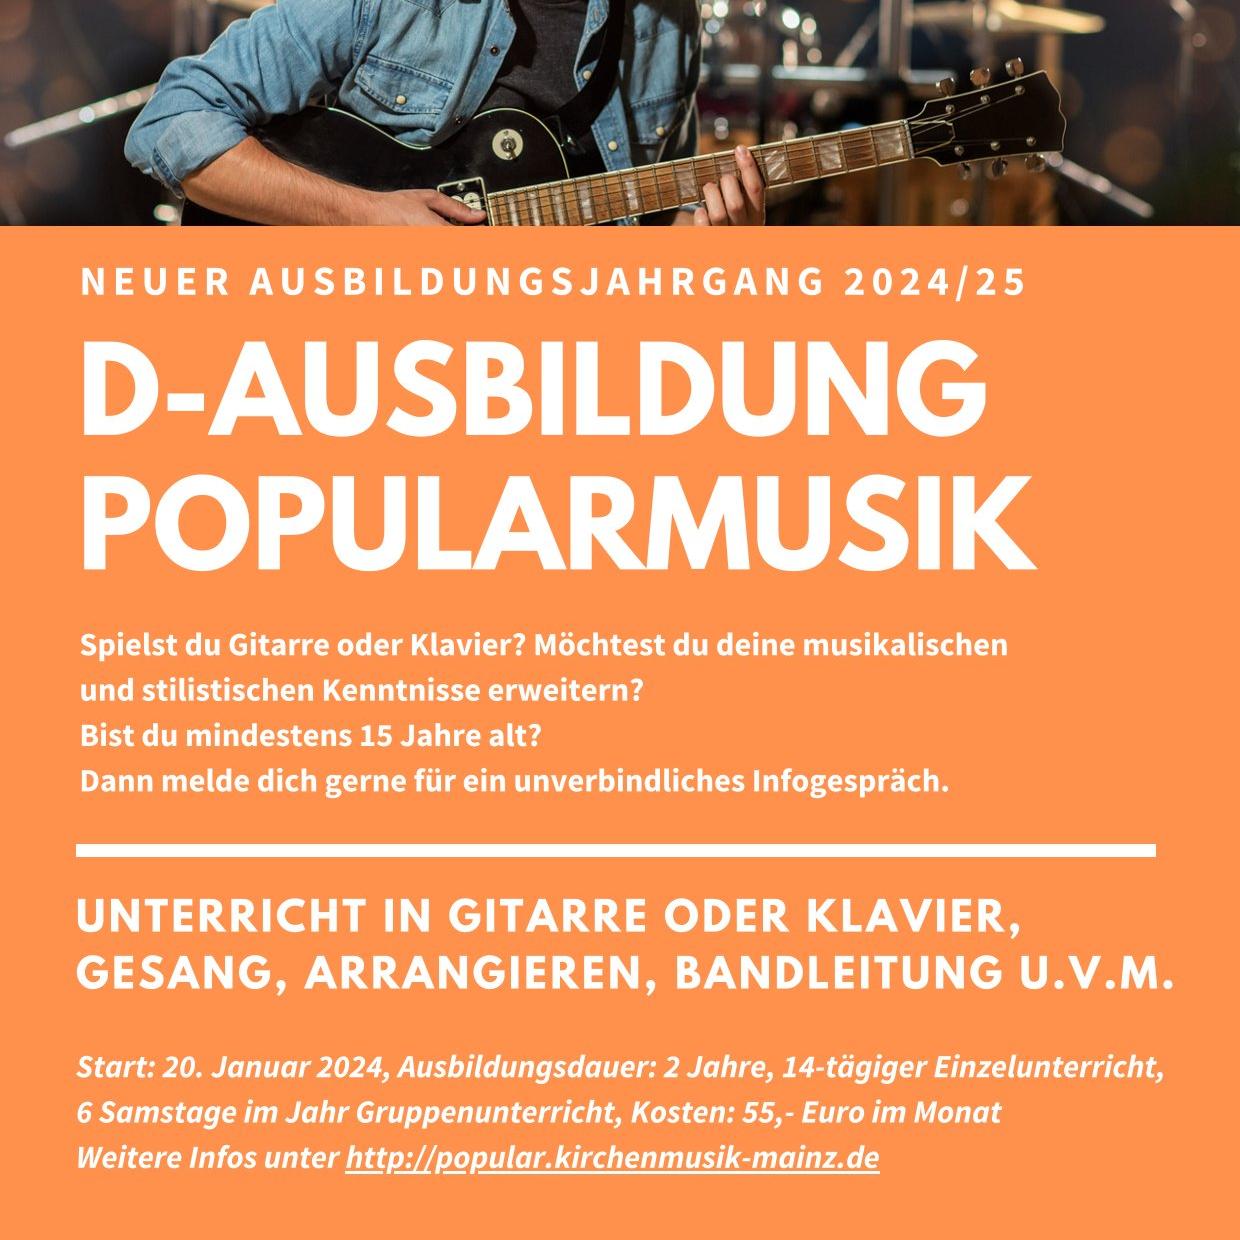 D-Popularmusik-2-1